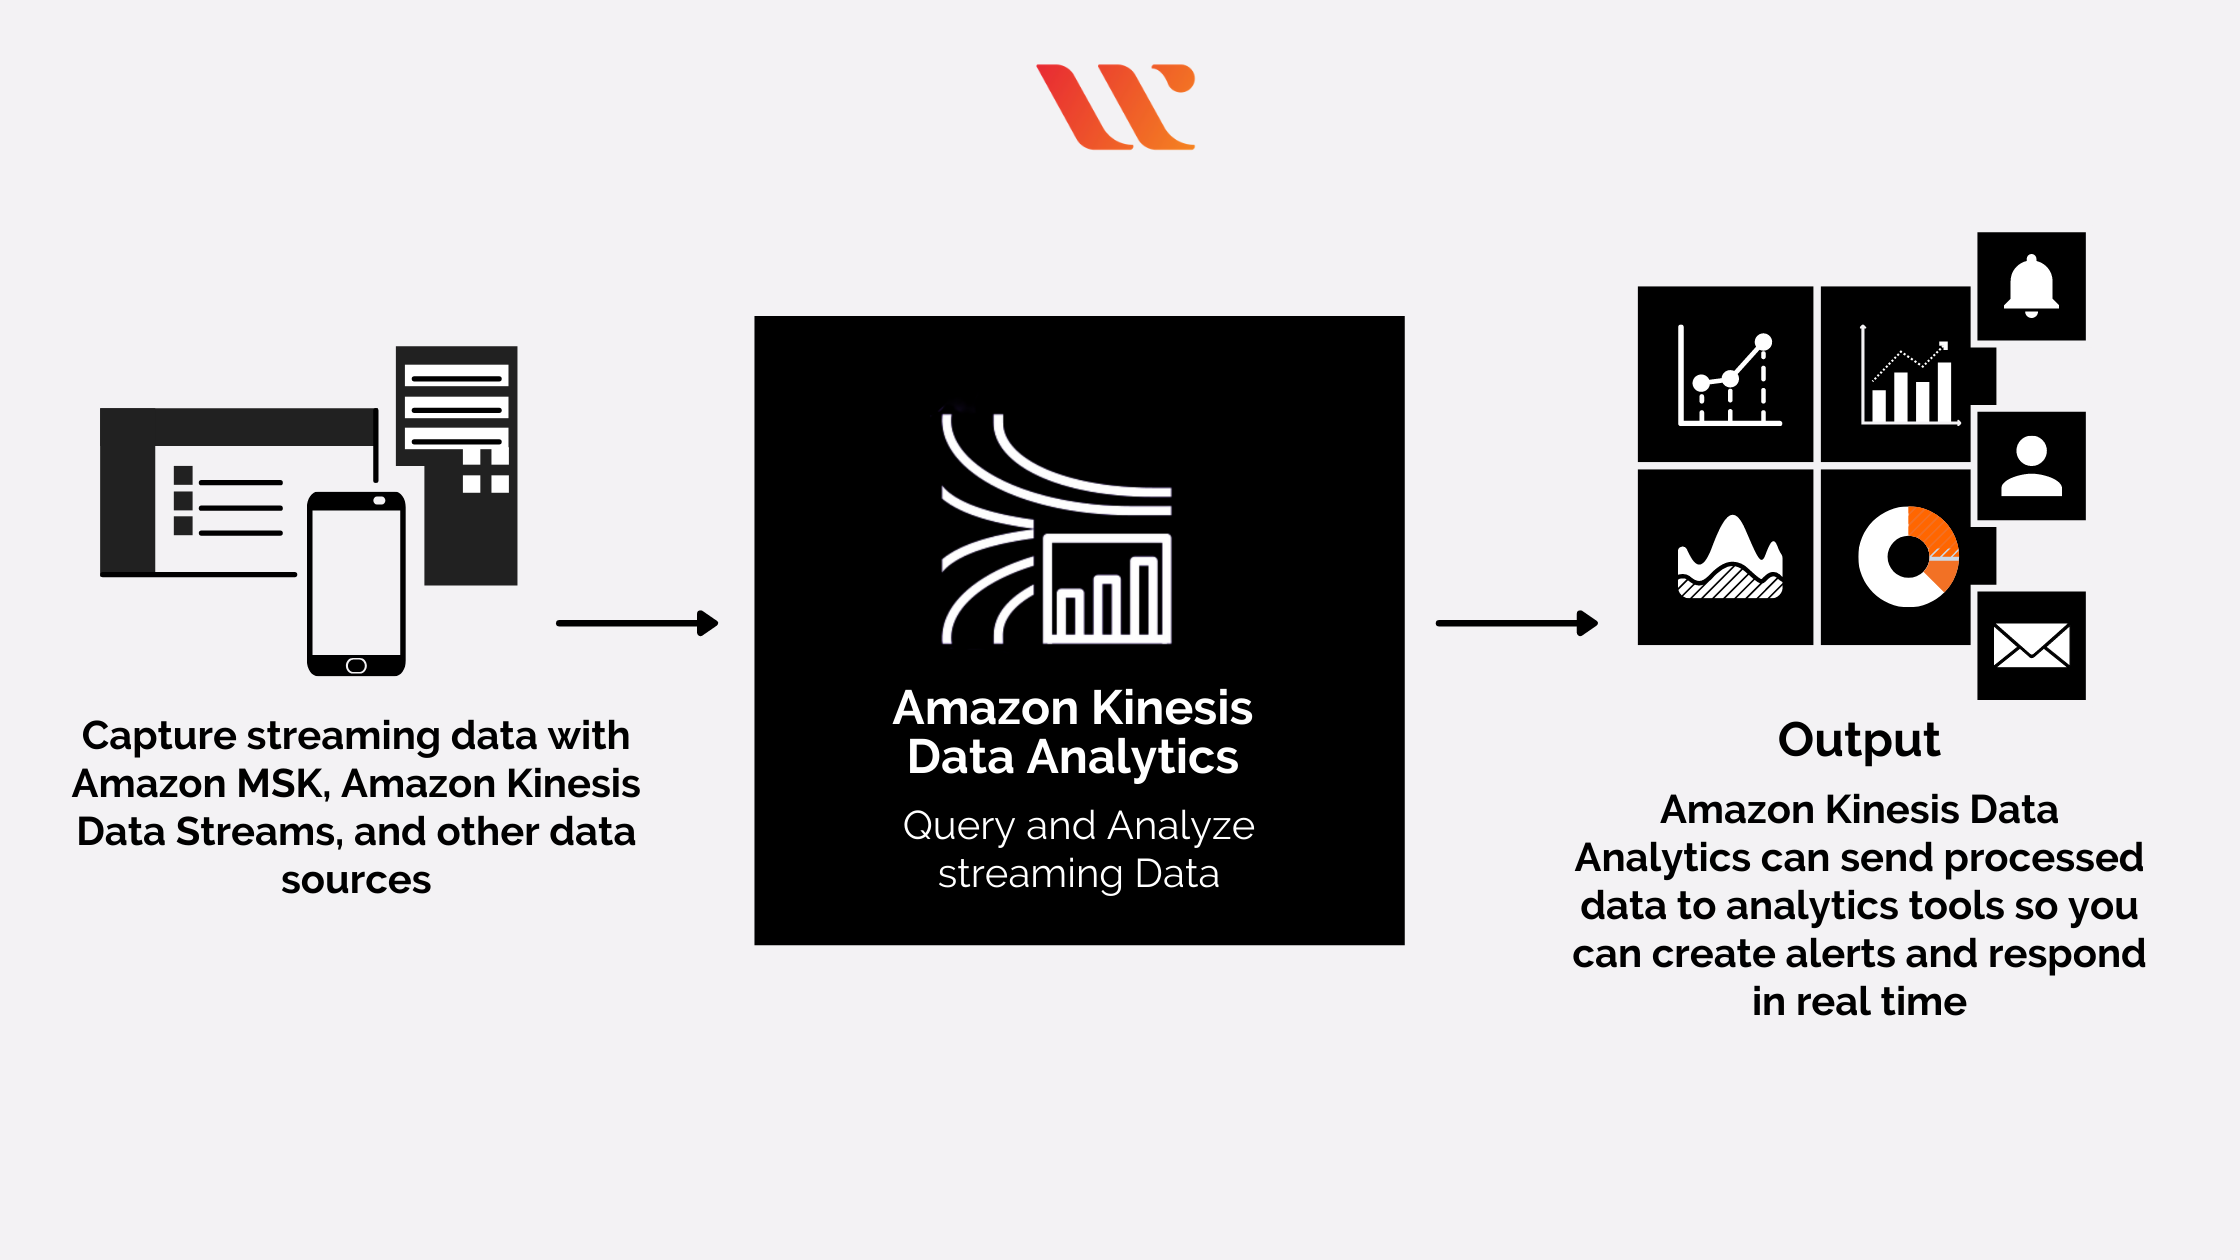 Amazon Kinesis Data Analytics